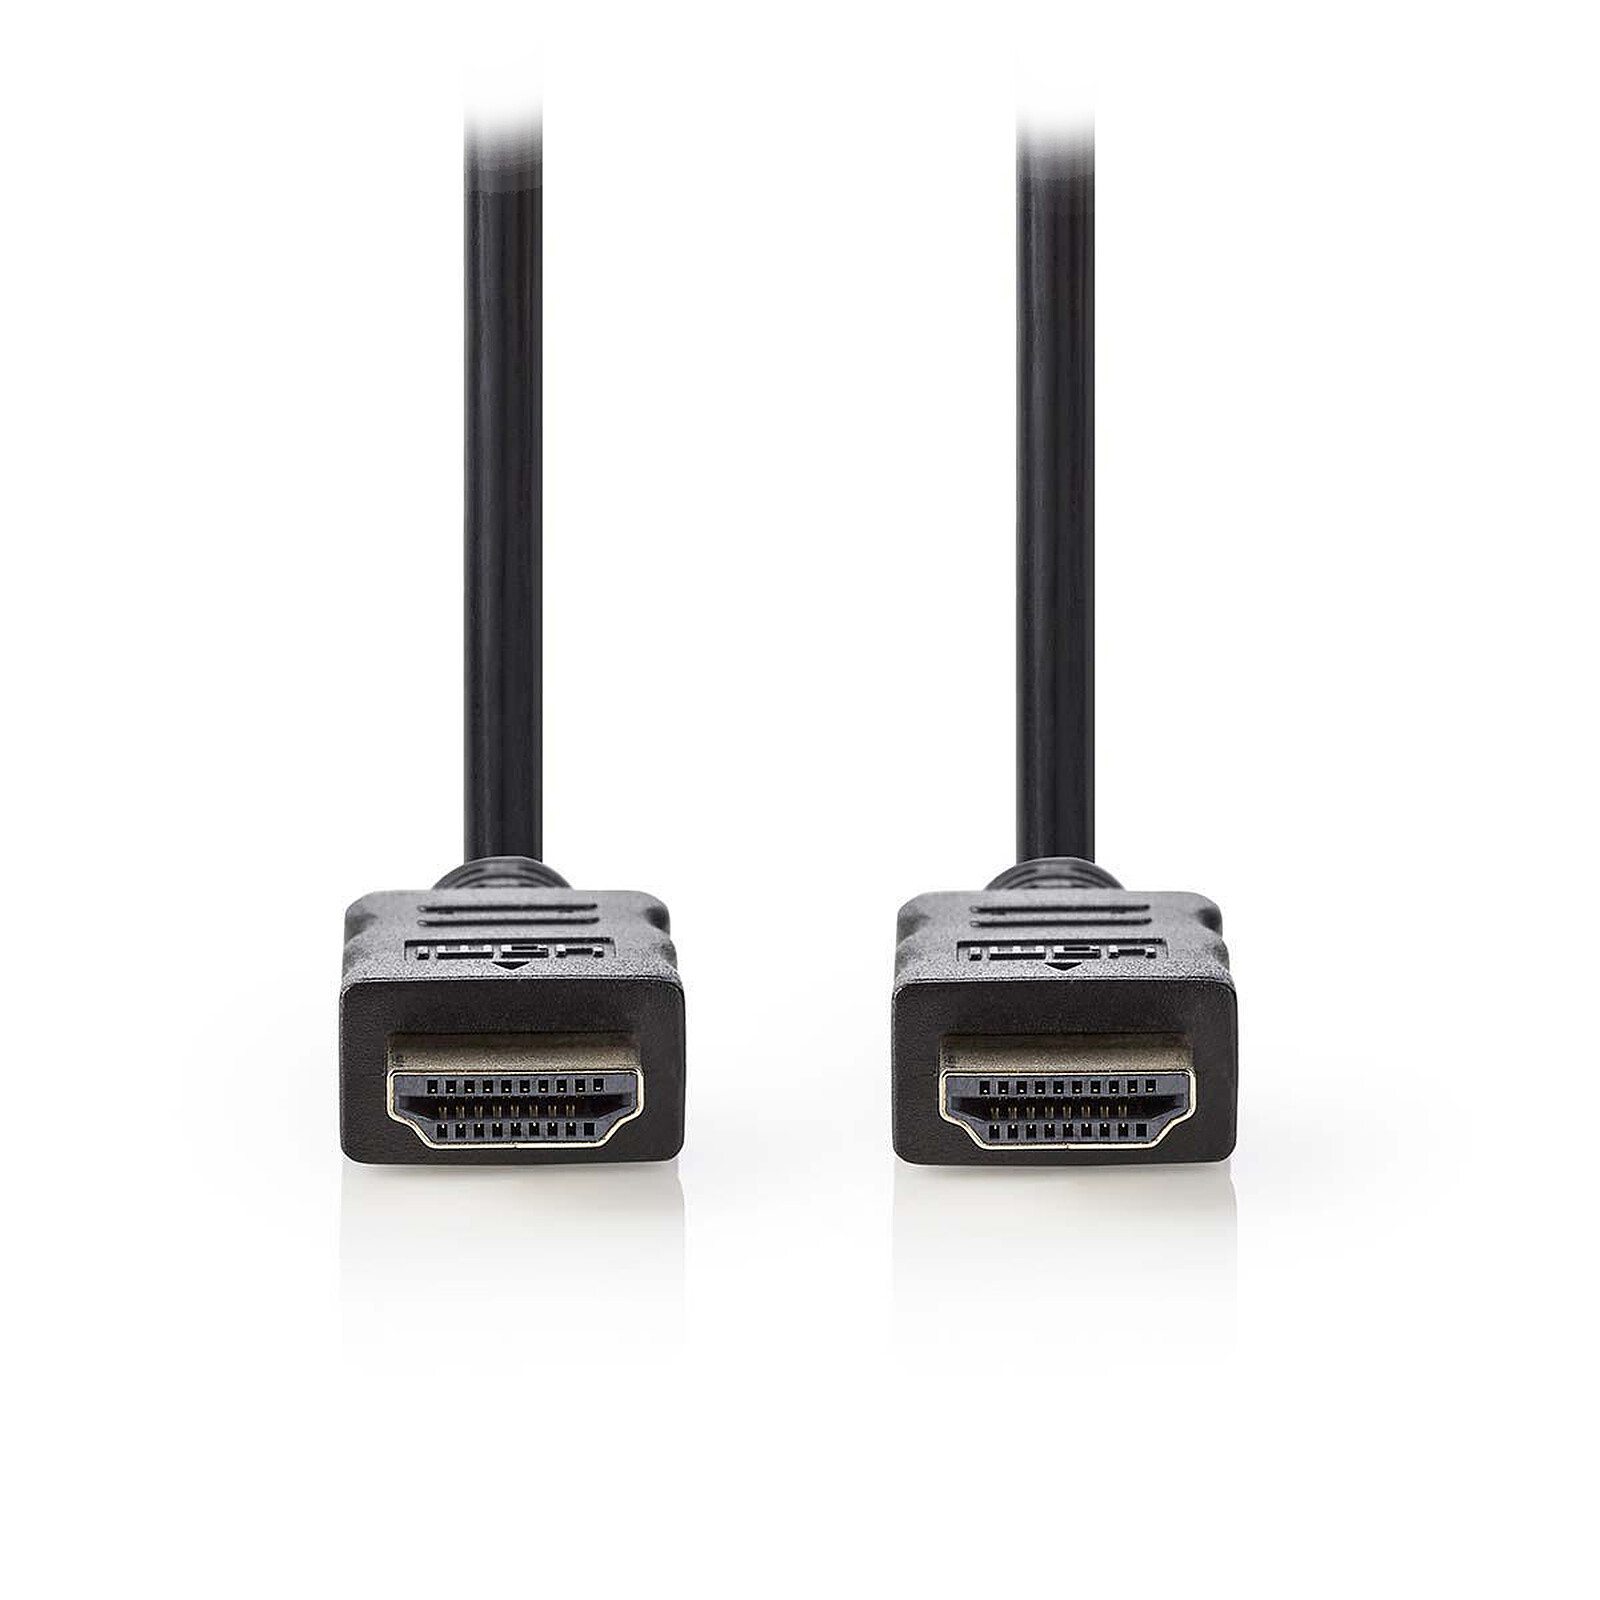 V7 Câble HDMI (m/m) noir Haut débit avec Ethernet 5 m